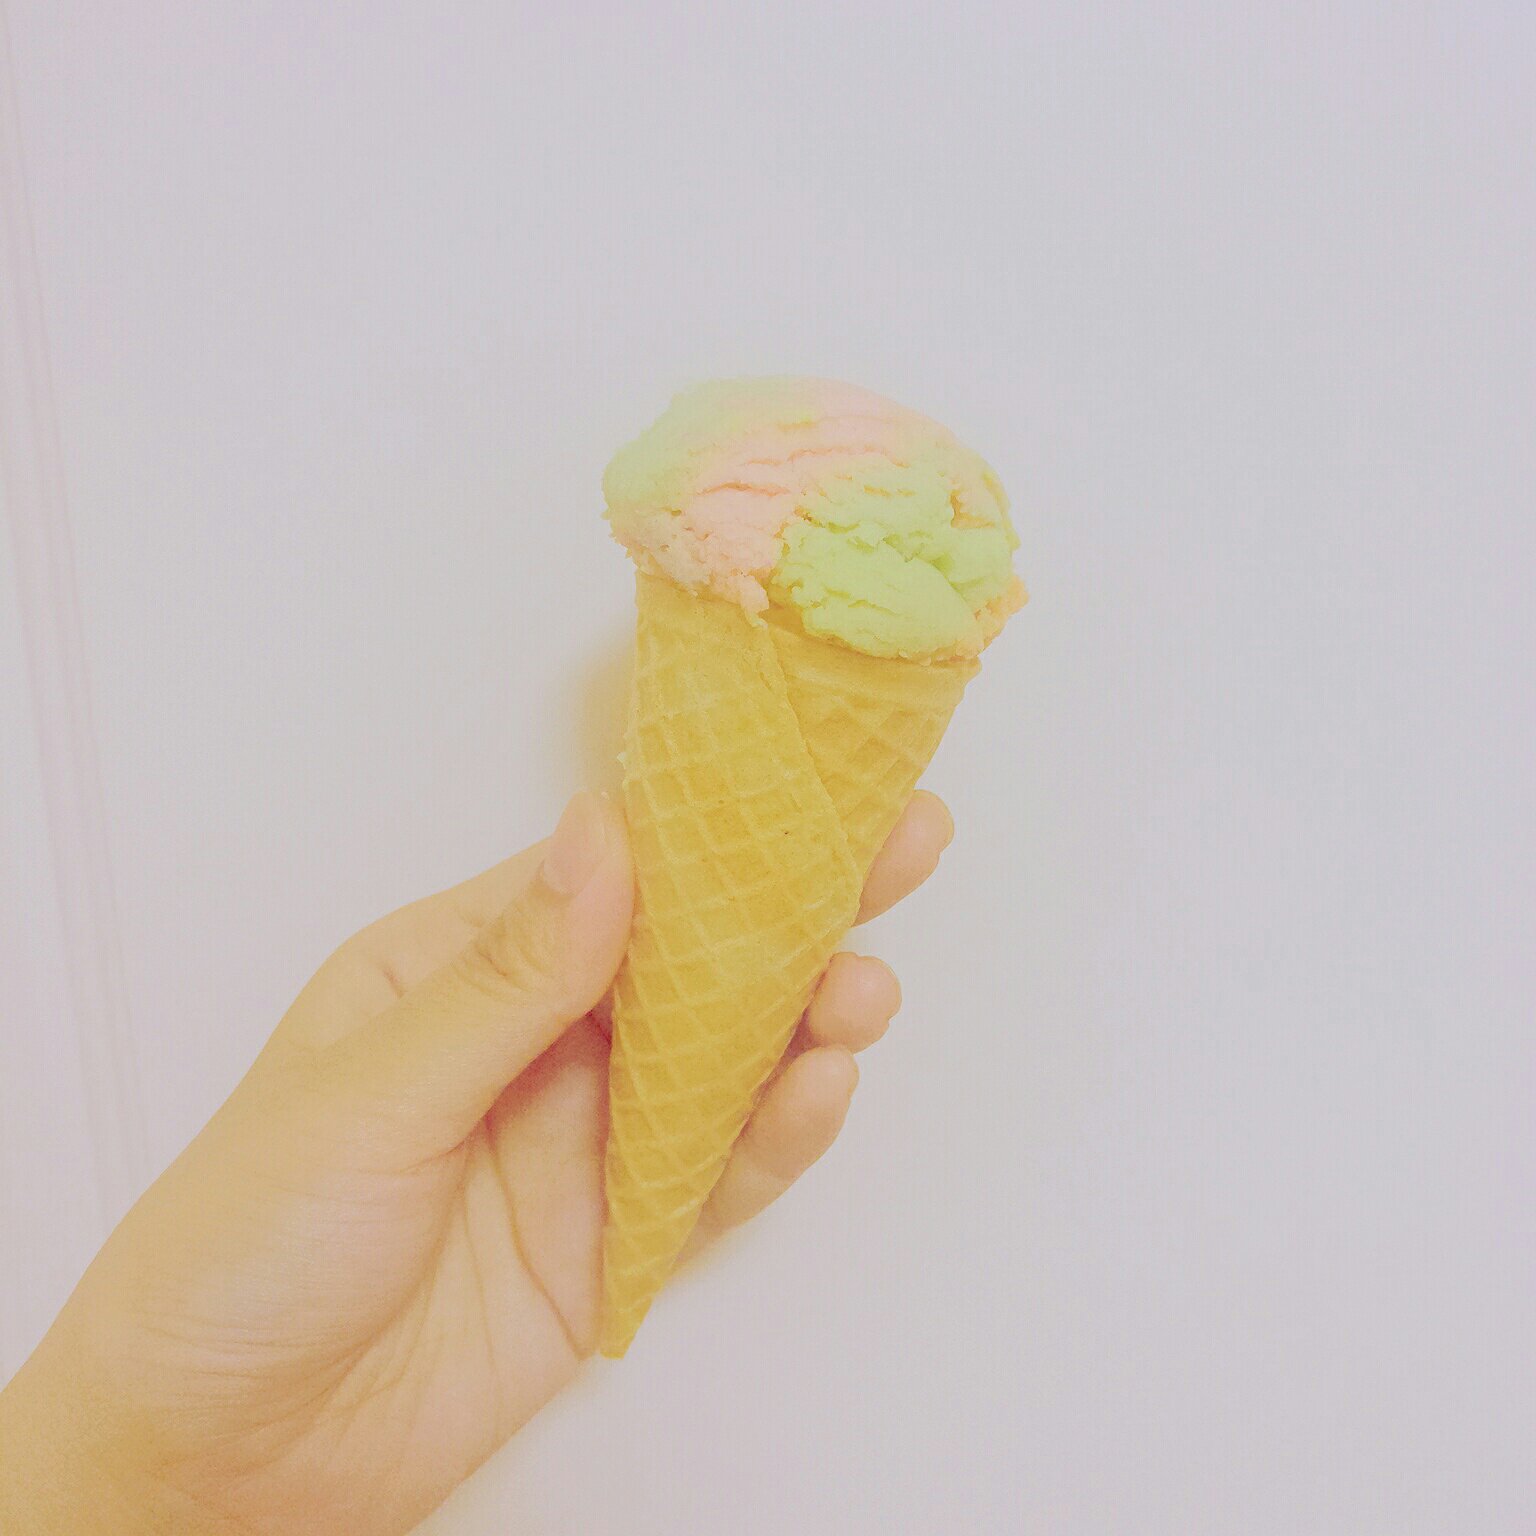 冰淇淋曲奇